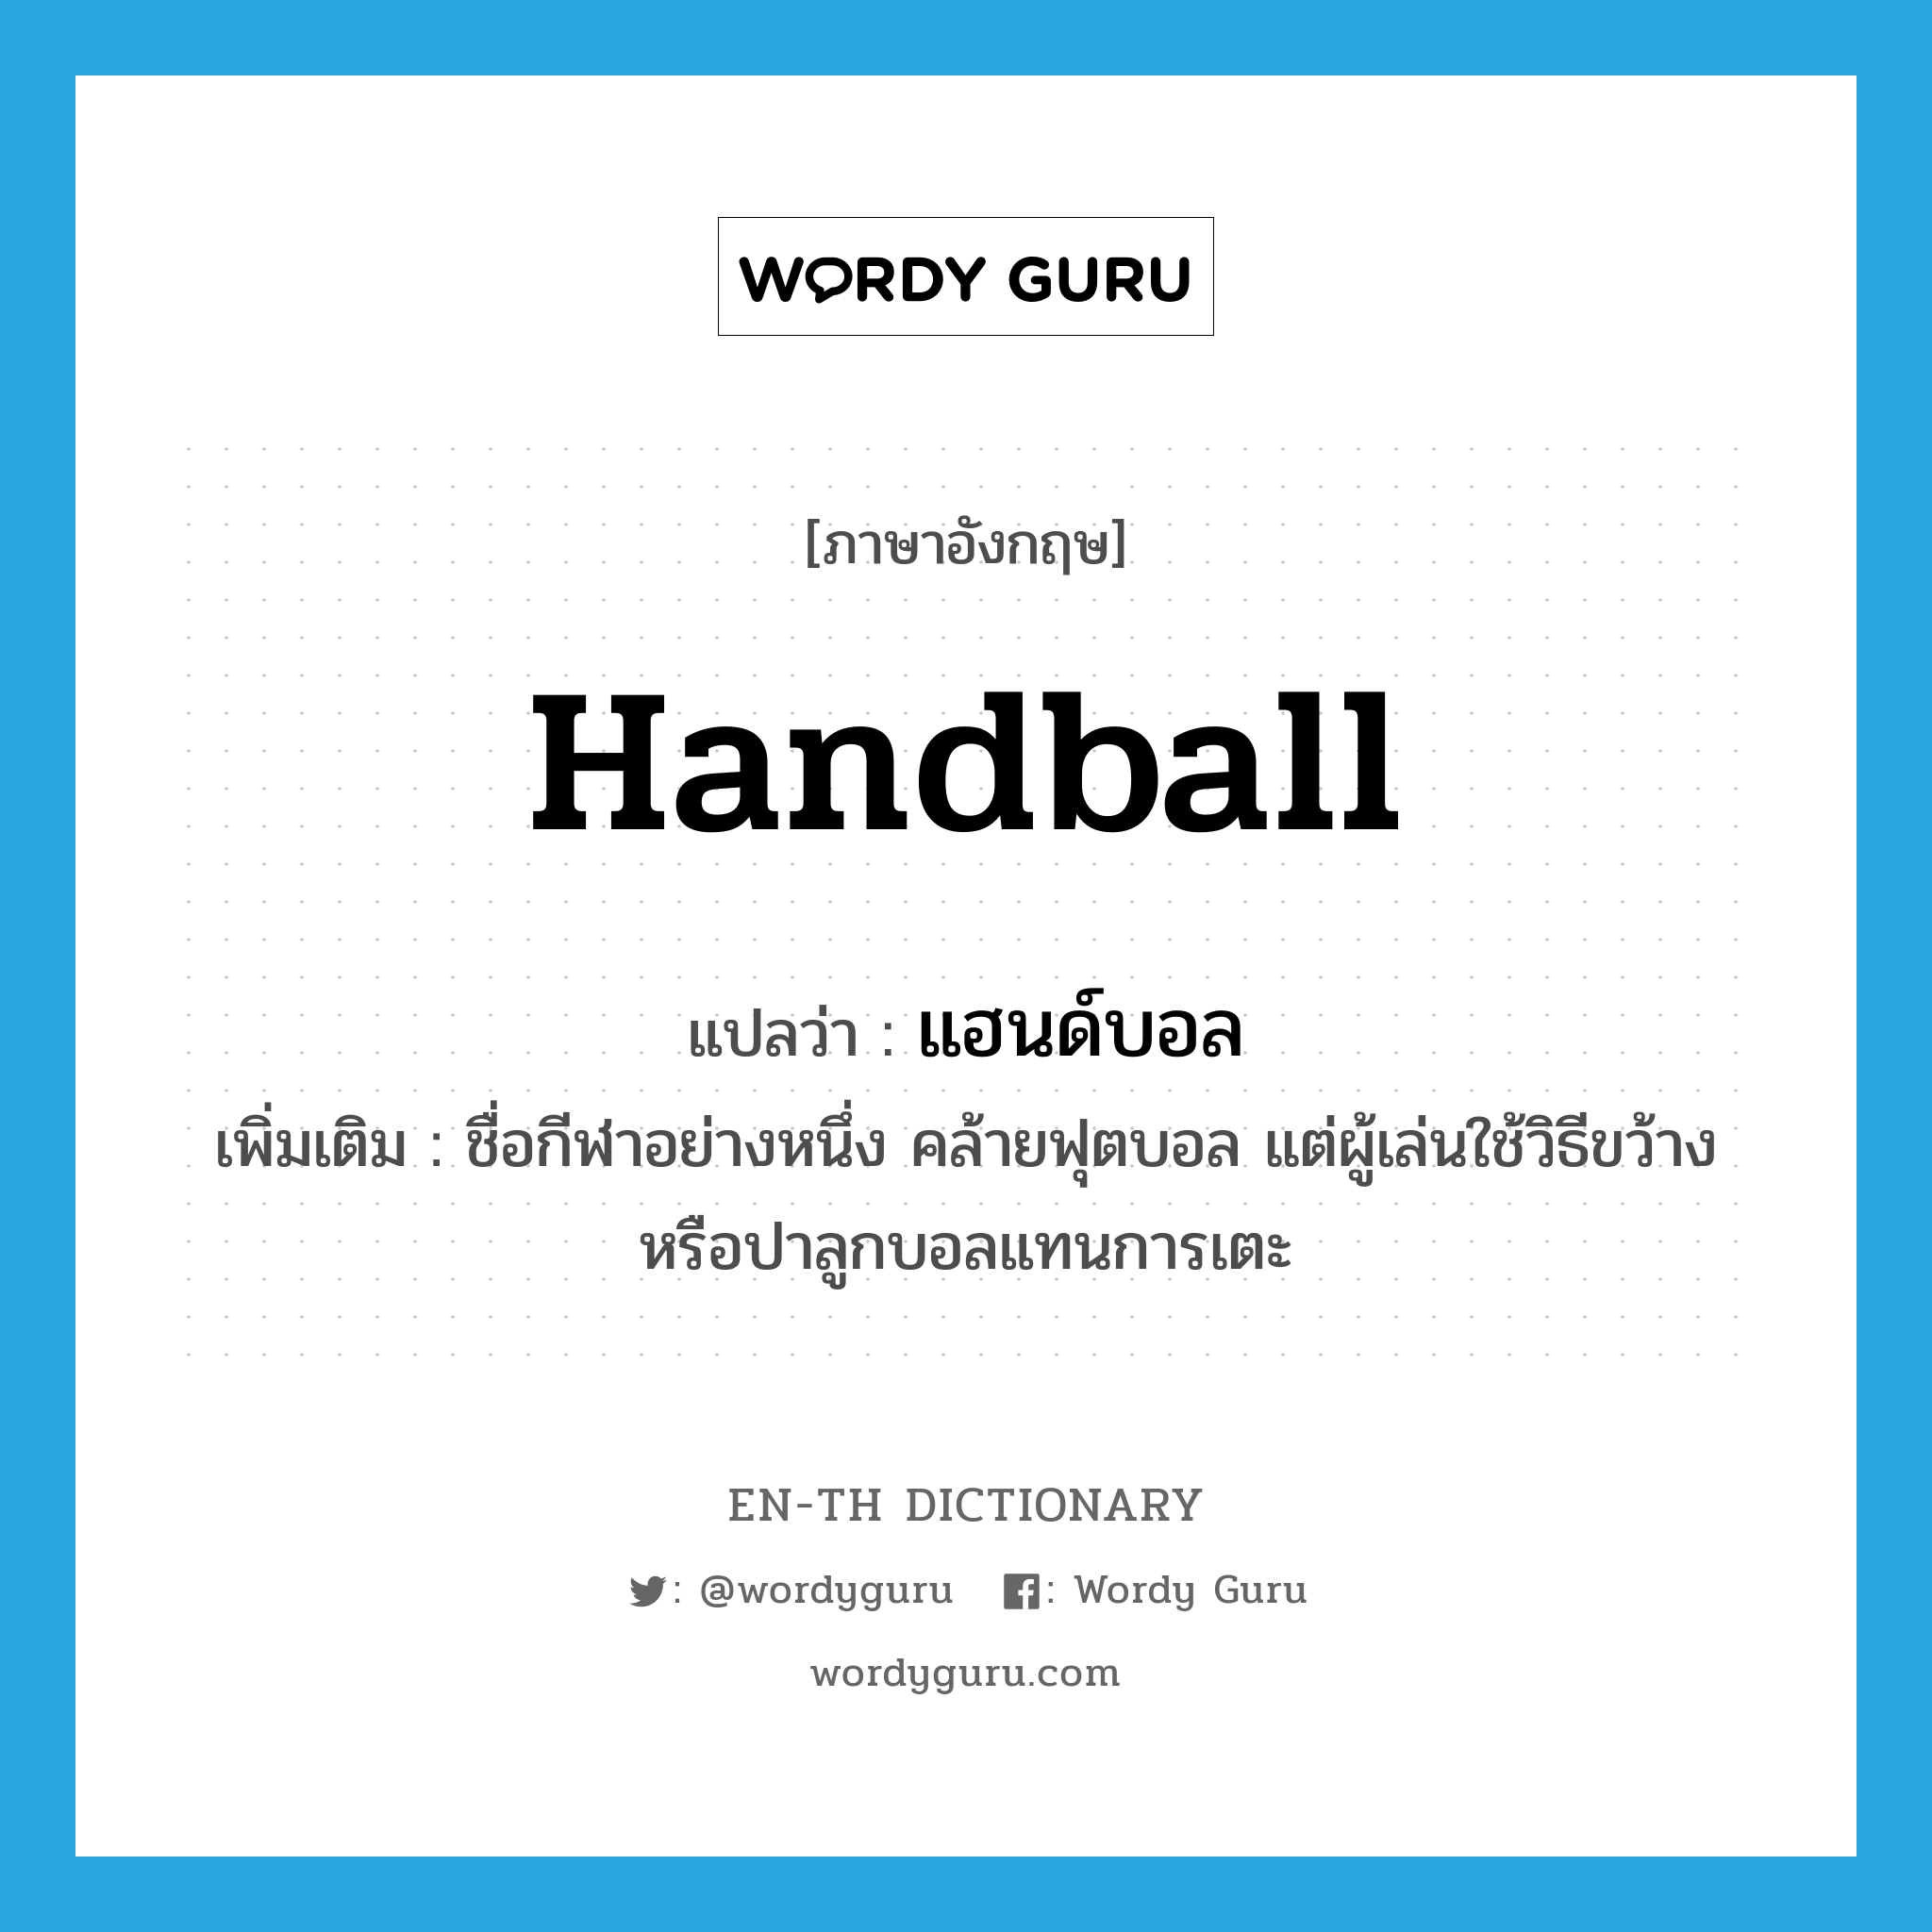 แฮนด์บอล ภาษาอังกฤษ?, คำศัพท์ภาษาอังกฤษ แฮนด์บอล แปลว่า handball ประเภท N เพิ่มเติม ชื่อกีฬาอย่างหนึ่ง คล้ายฟุตบอล แต่ผู้เล่นใช้วิธีขว้างหรือปาลูกบอลแทนการเตะ หมวด N